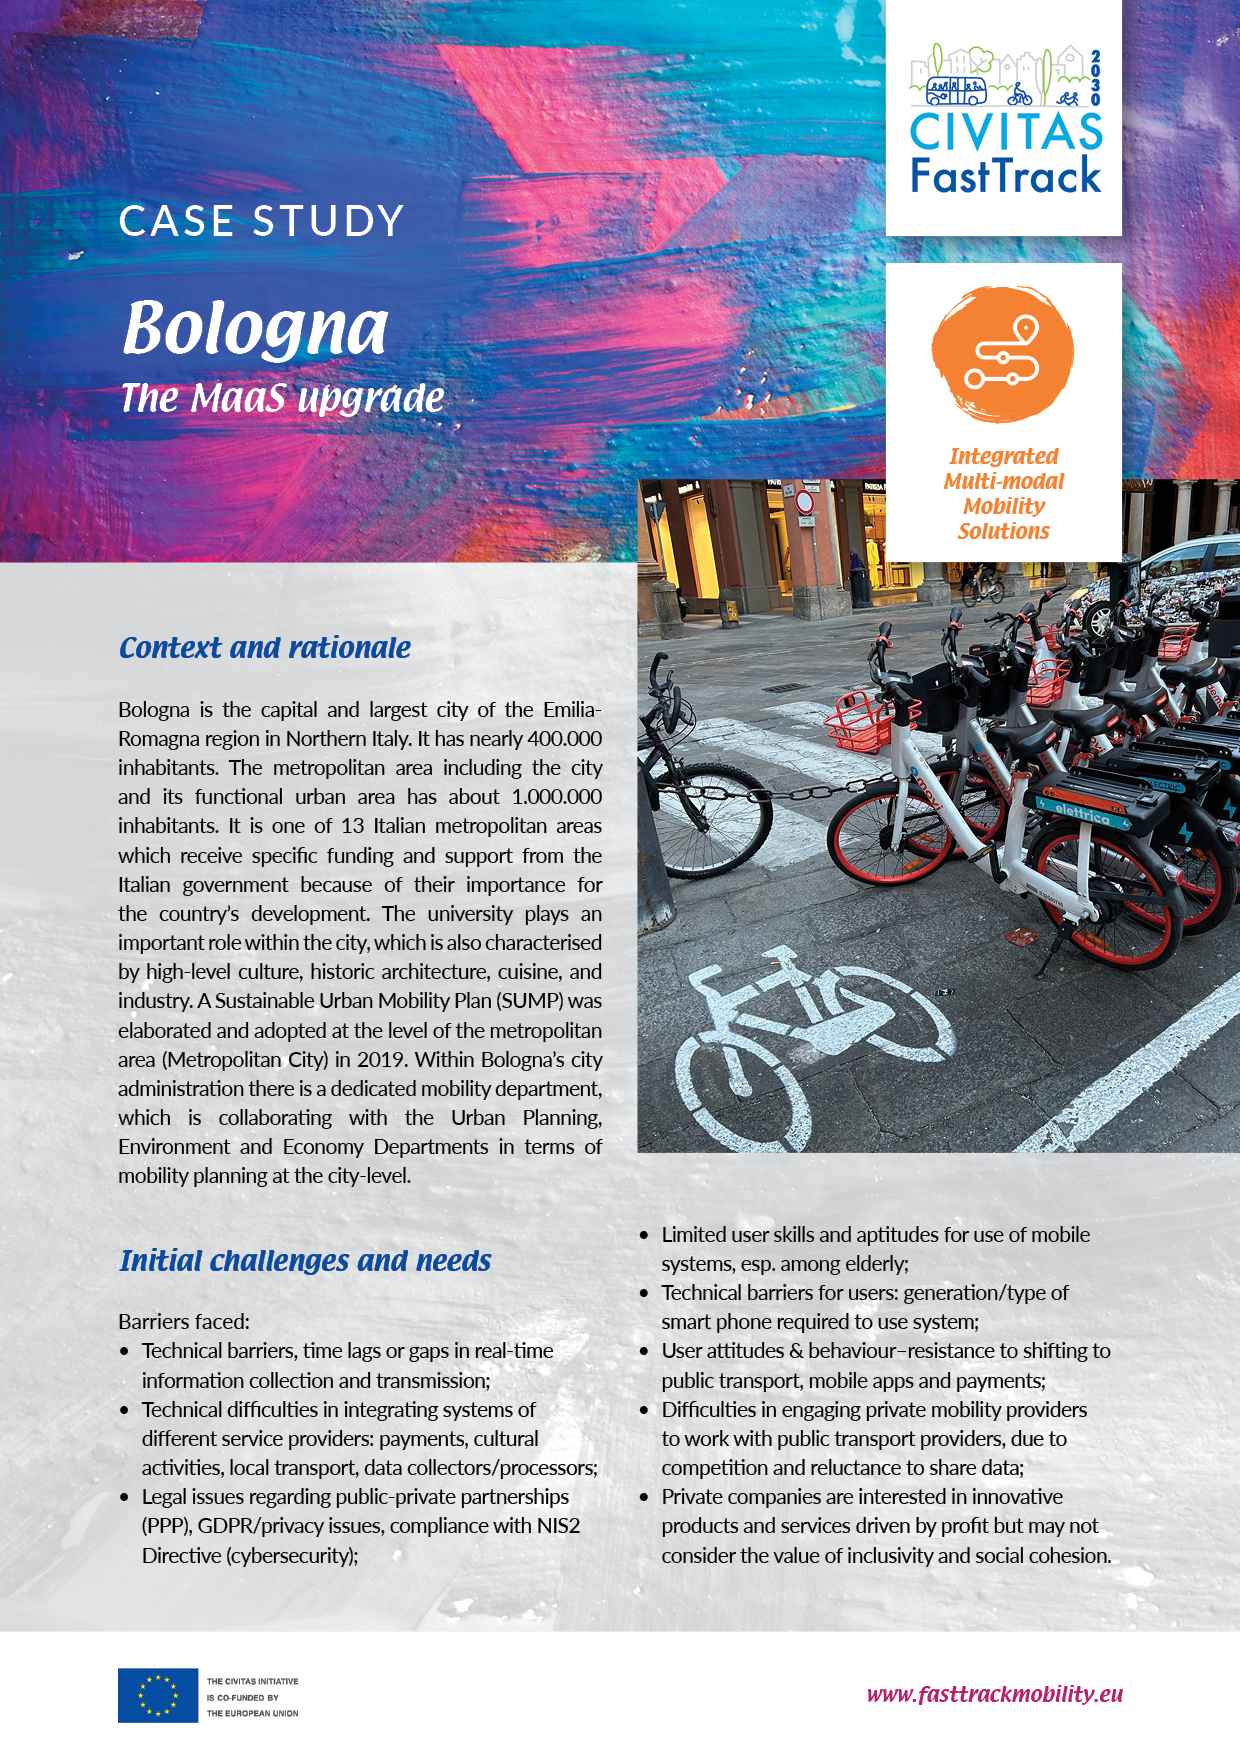 Bolonia - La actualización MaaS